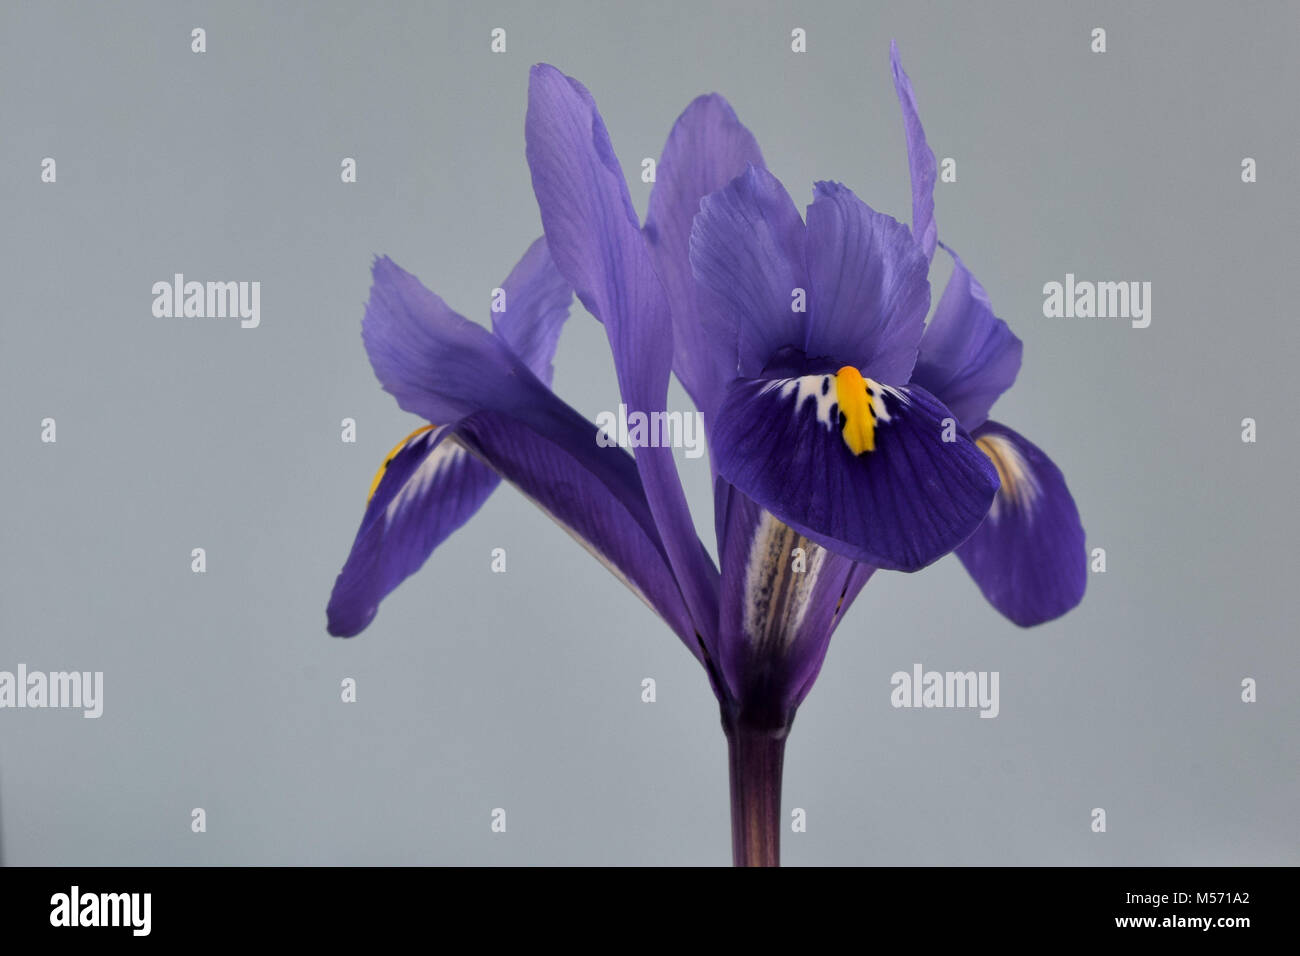 Close-up of a miniature de couleur violet foncé fleur iris contre un fond clair Banque D'Images